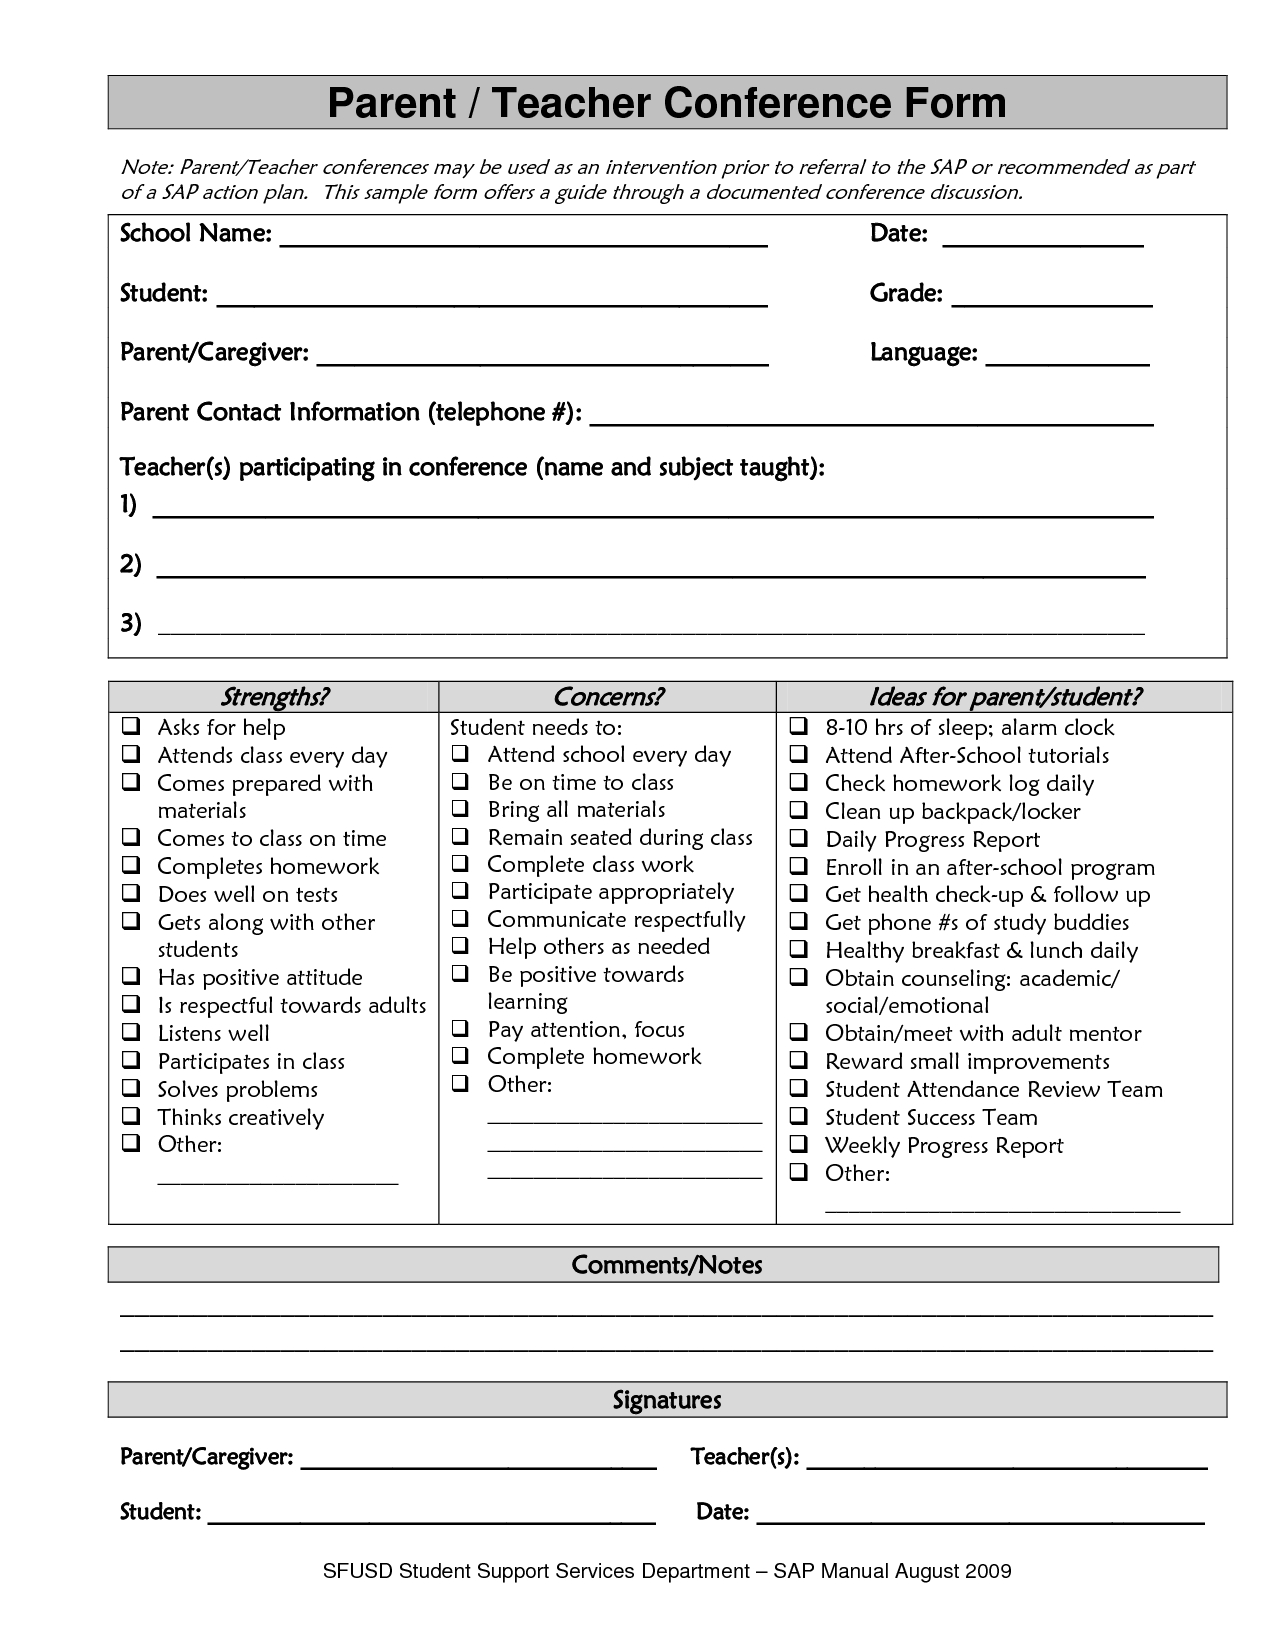 Sample Parent Teacher Conference Form Parent Teacher Conference Form - Free Printable Parent Communication Log For Teachers